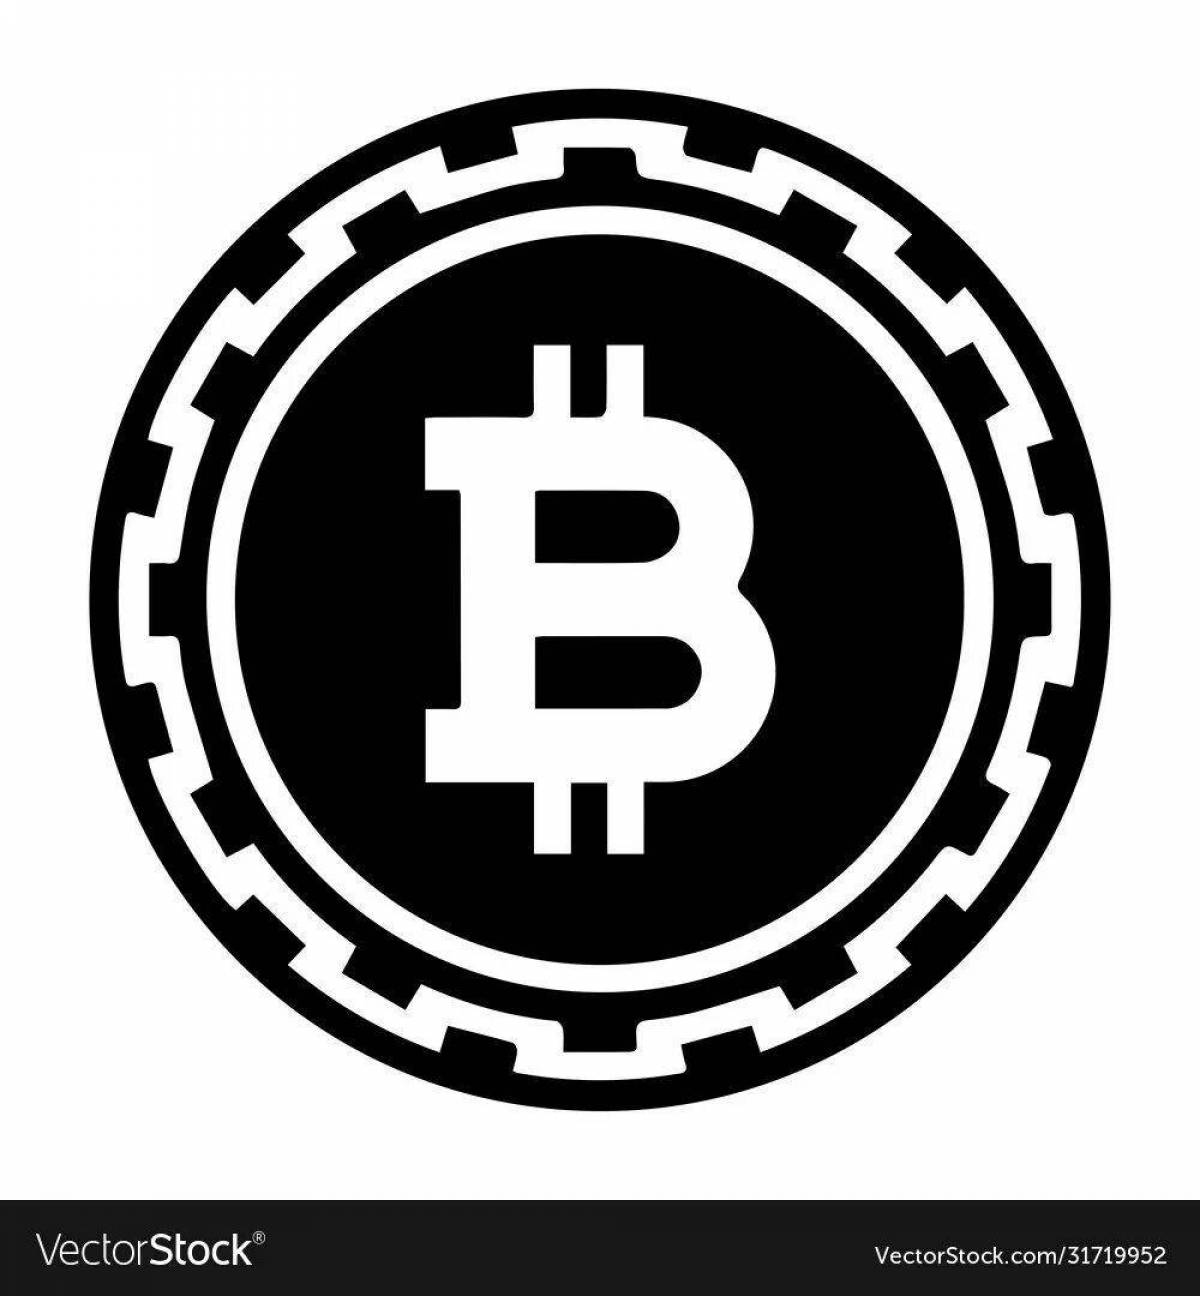 Bitcoin #12